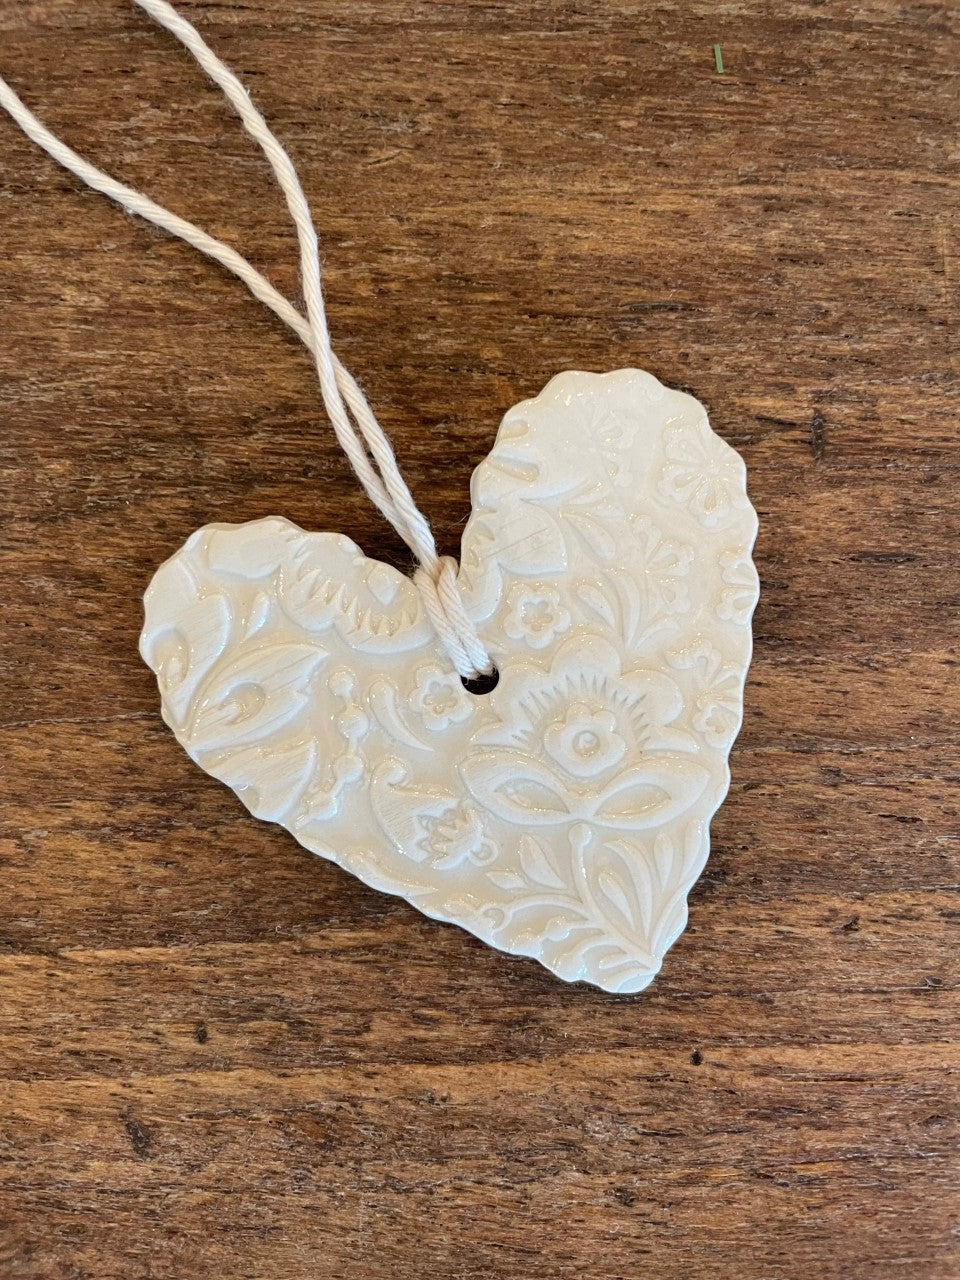 Handmade Ceramic Hearts